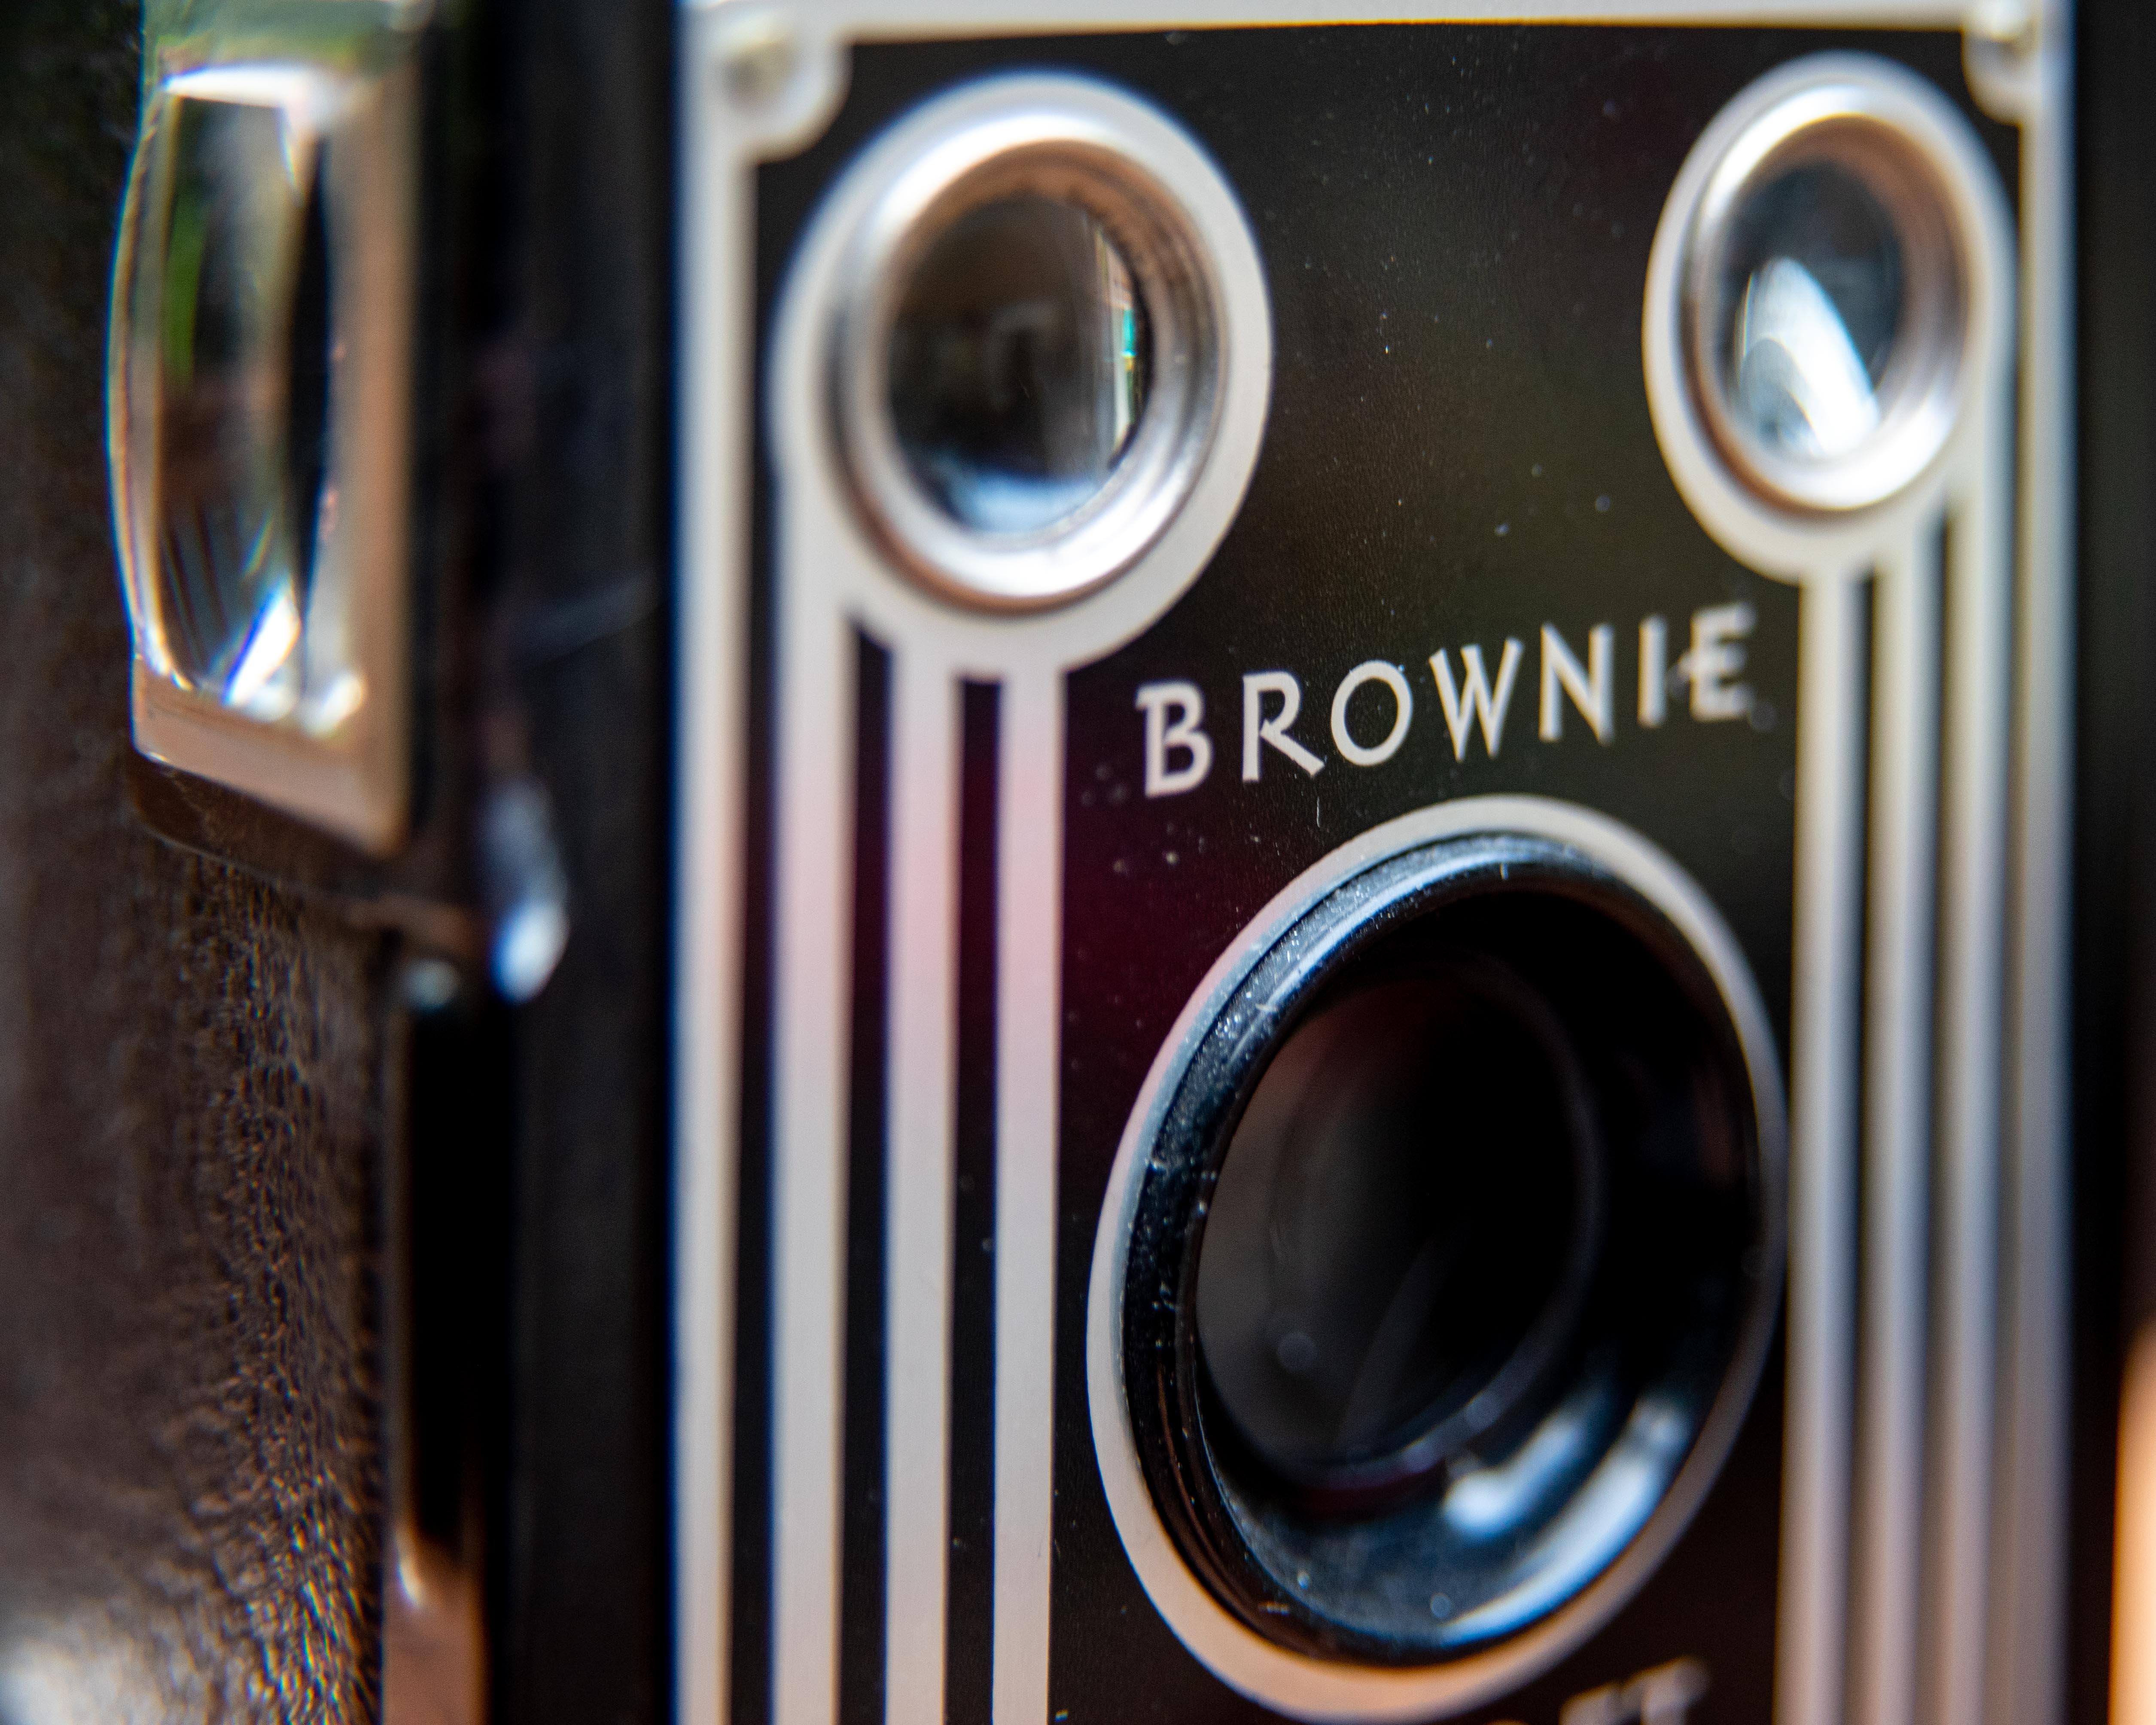 Kodak Brownie Box